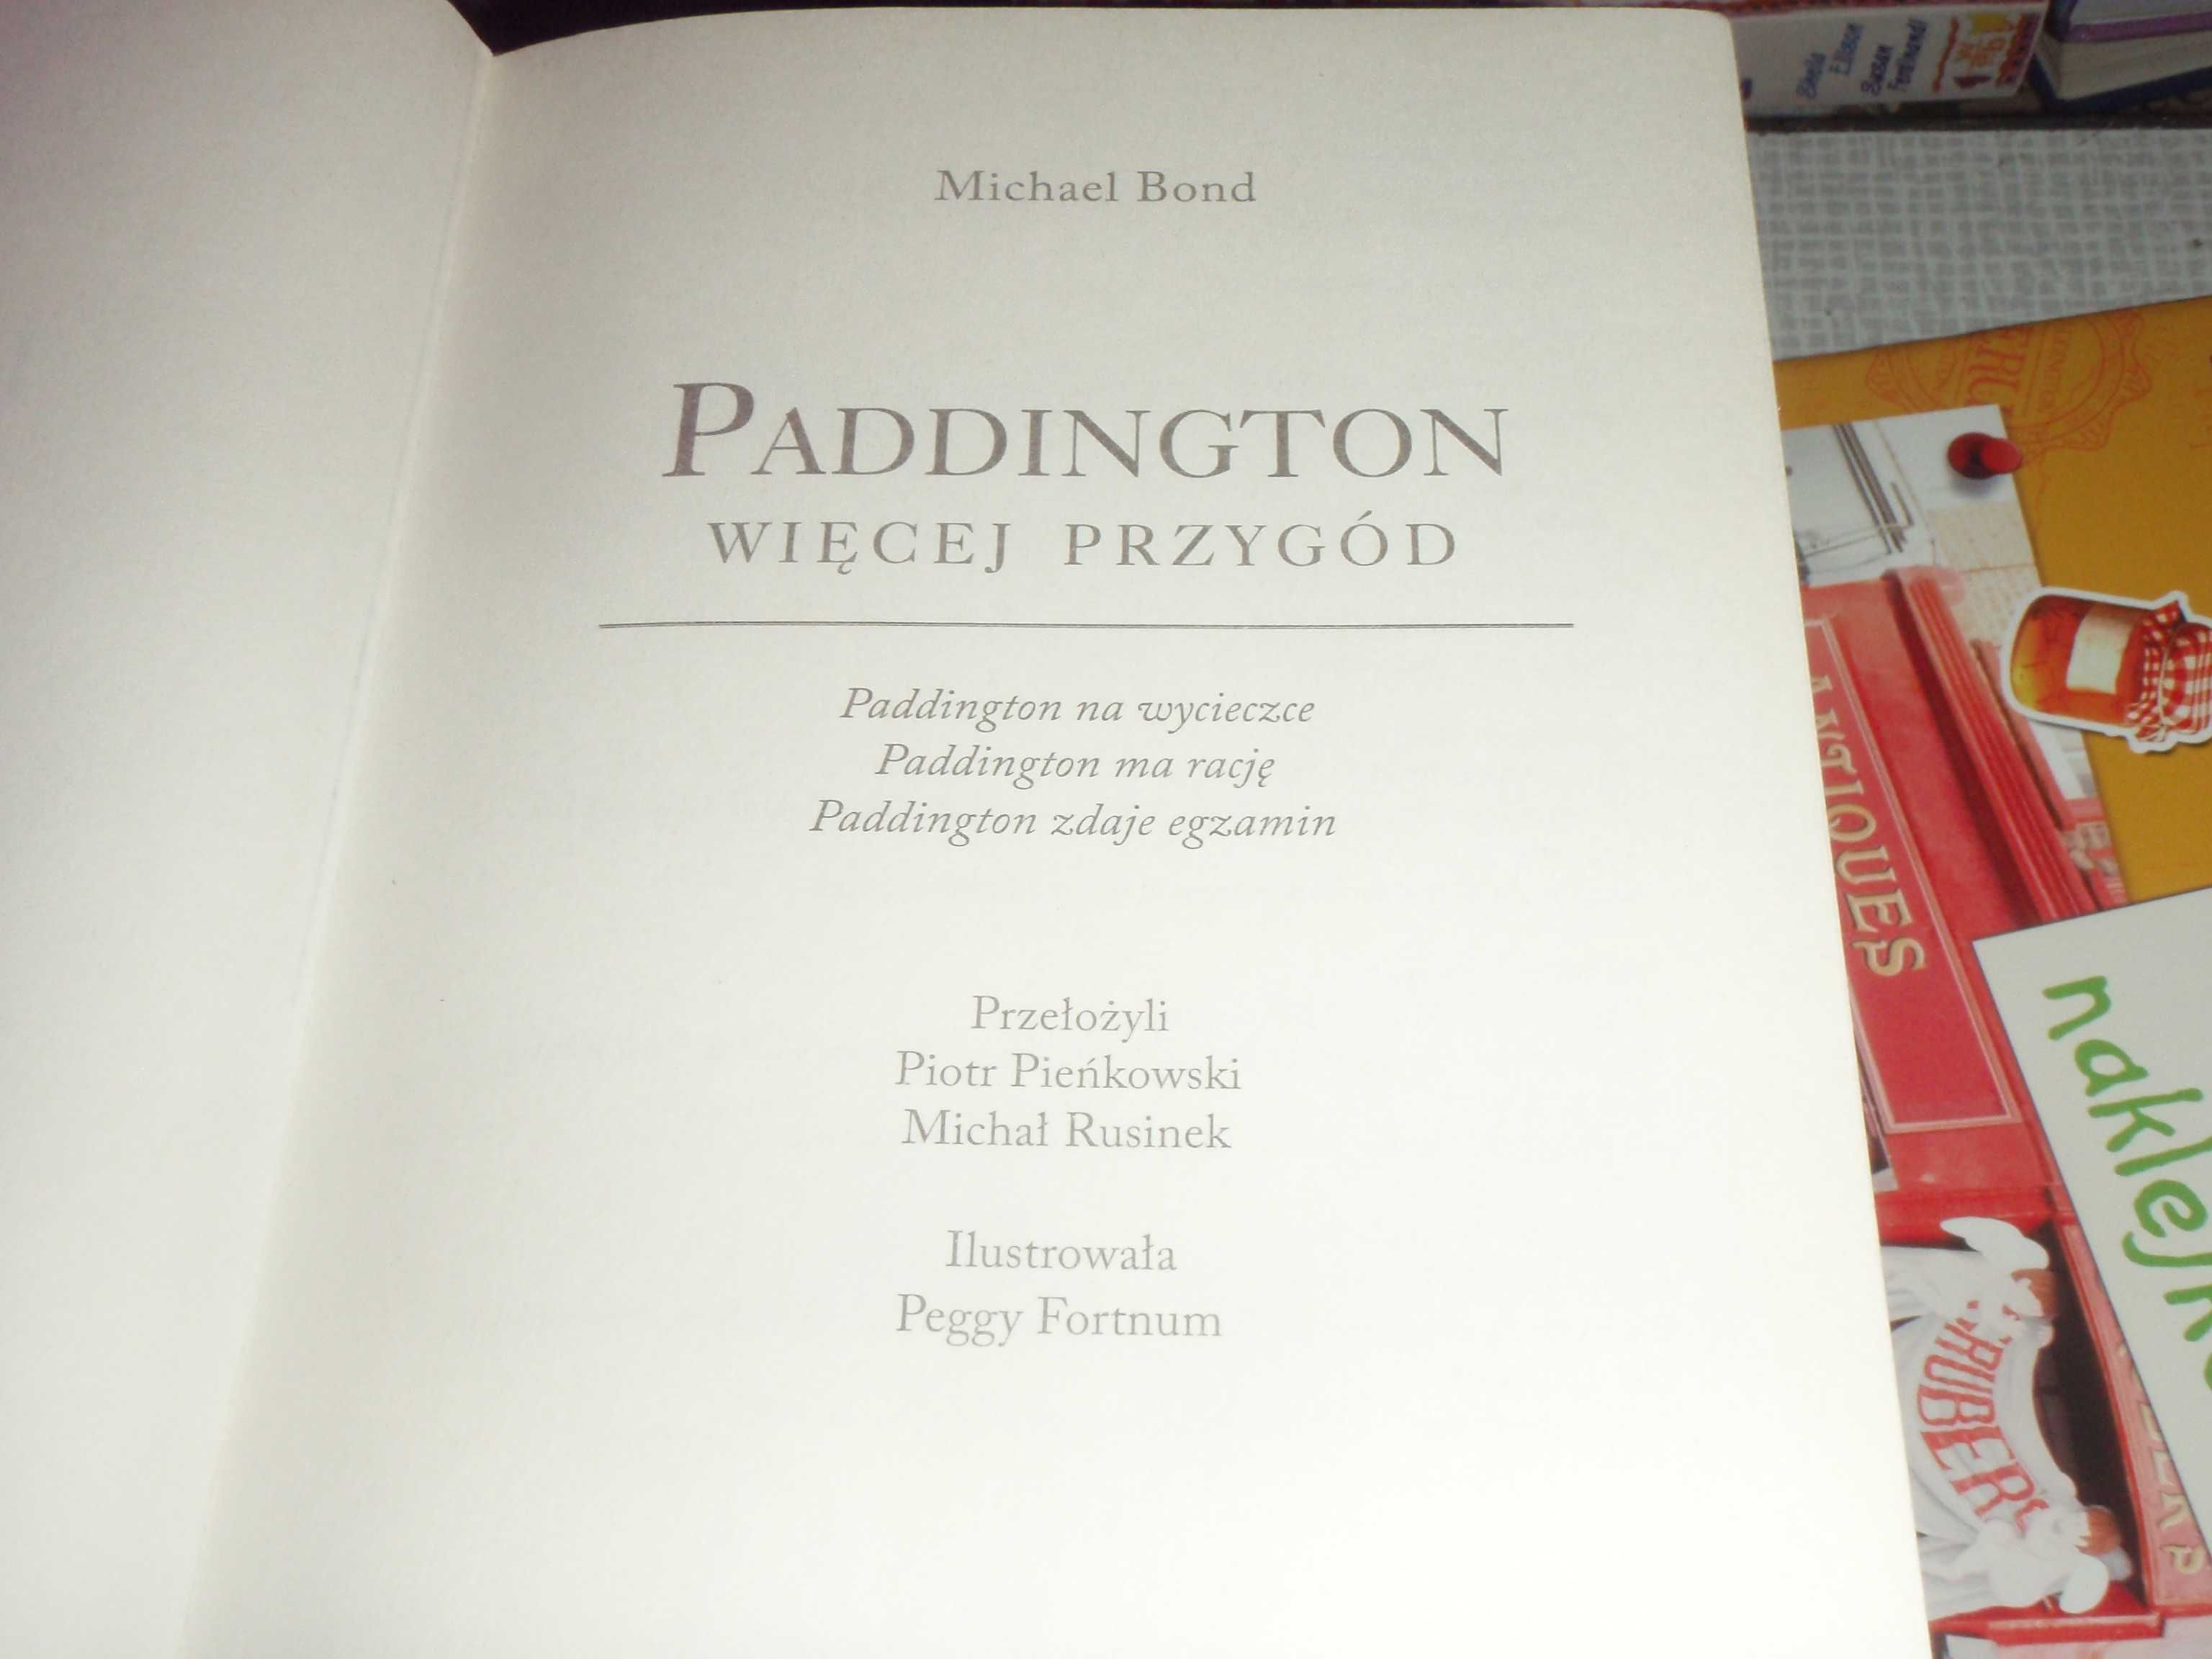 Paddington Więcej przygód  Michael Bond 430 stron, wiele przygód Misia